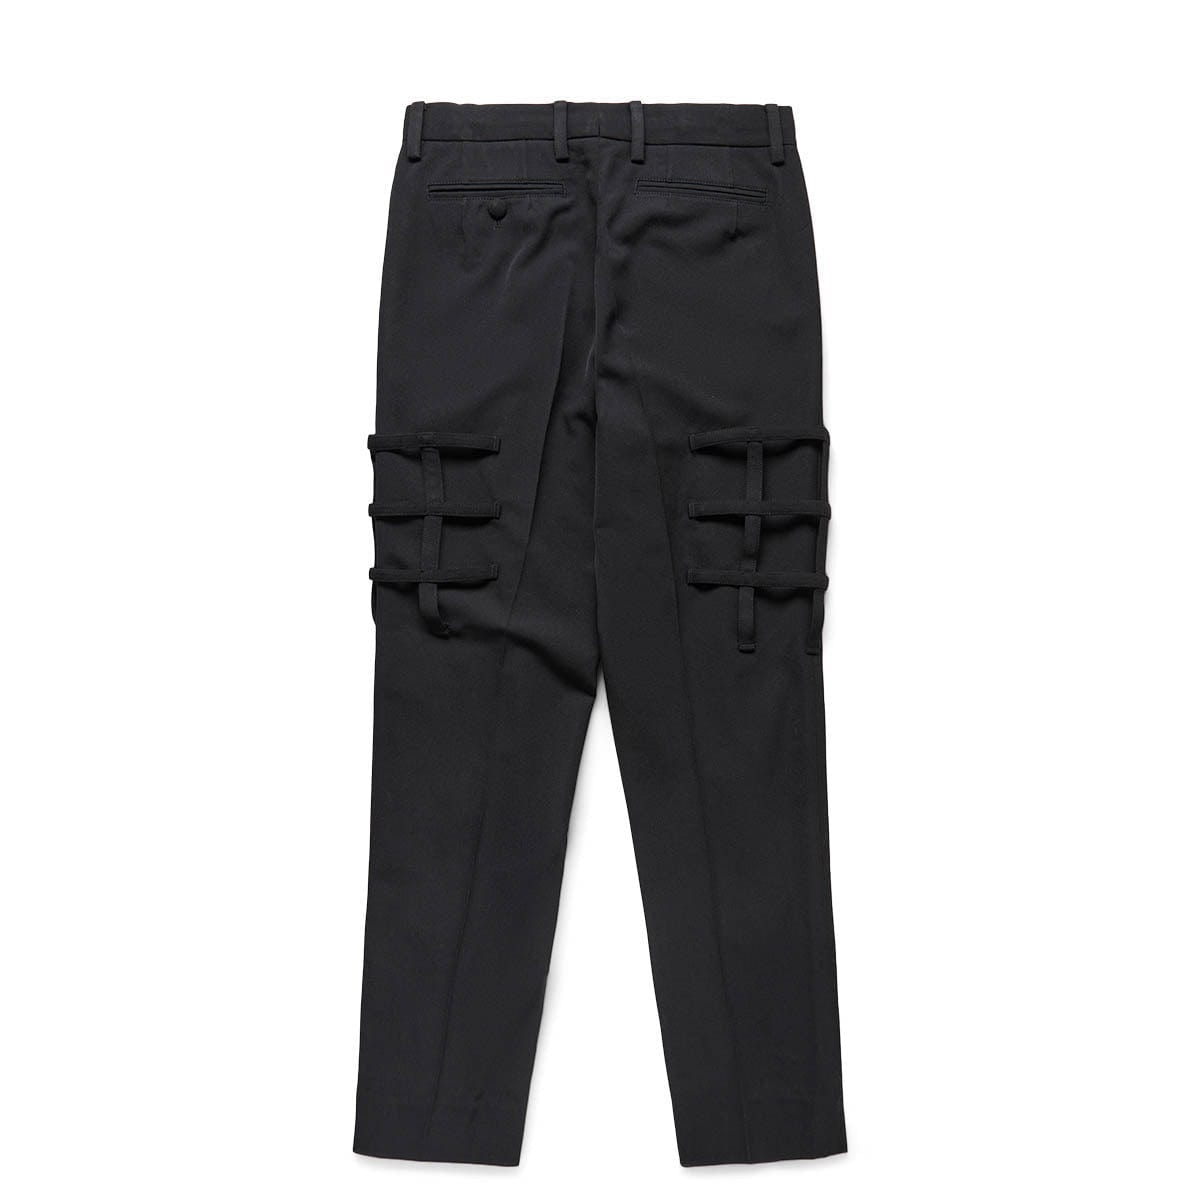 Black pants in Thai style by Lut | buy at UTOPIA 8